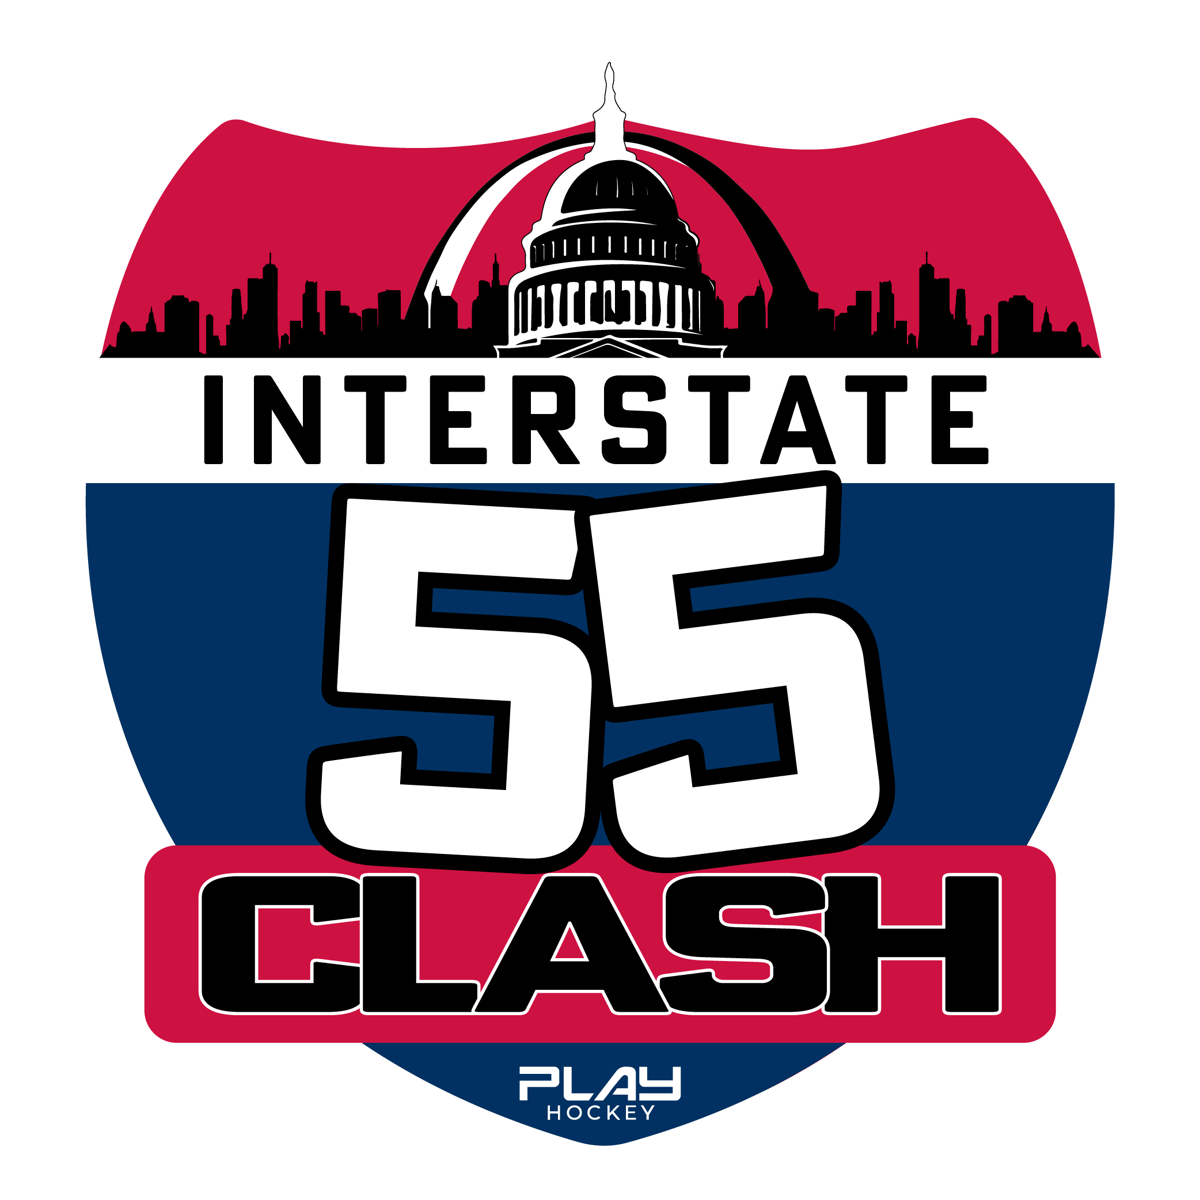 Interstate 55 Clash